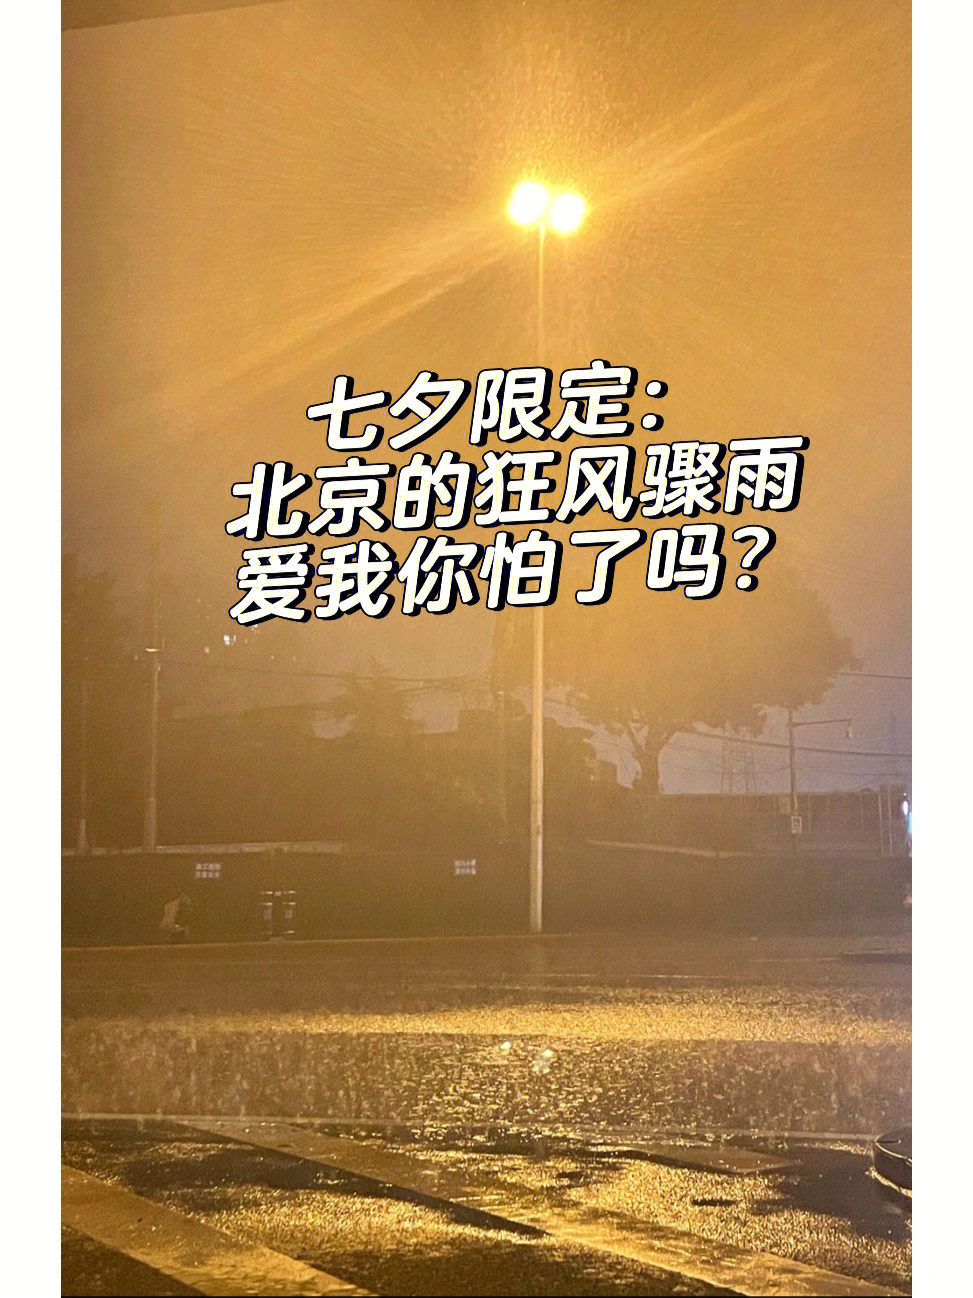 北京今晚的狂风骤雨不知道又是哪位渣男渣女在发誓hhh,爱我你怕了吗?